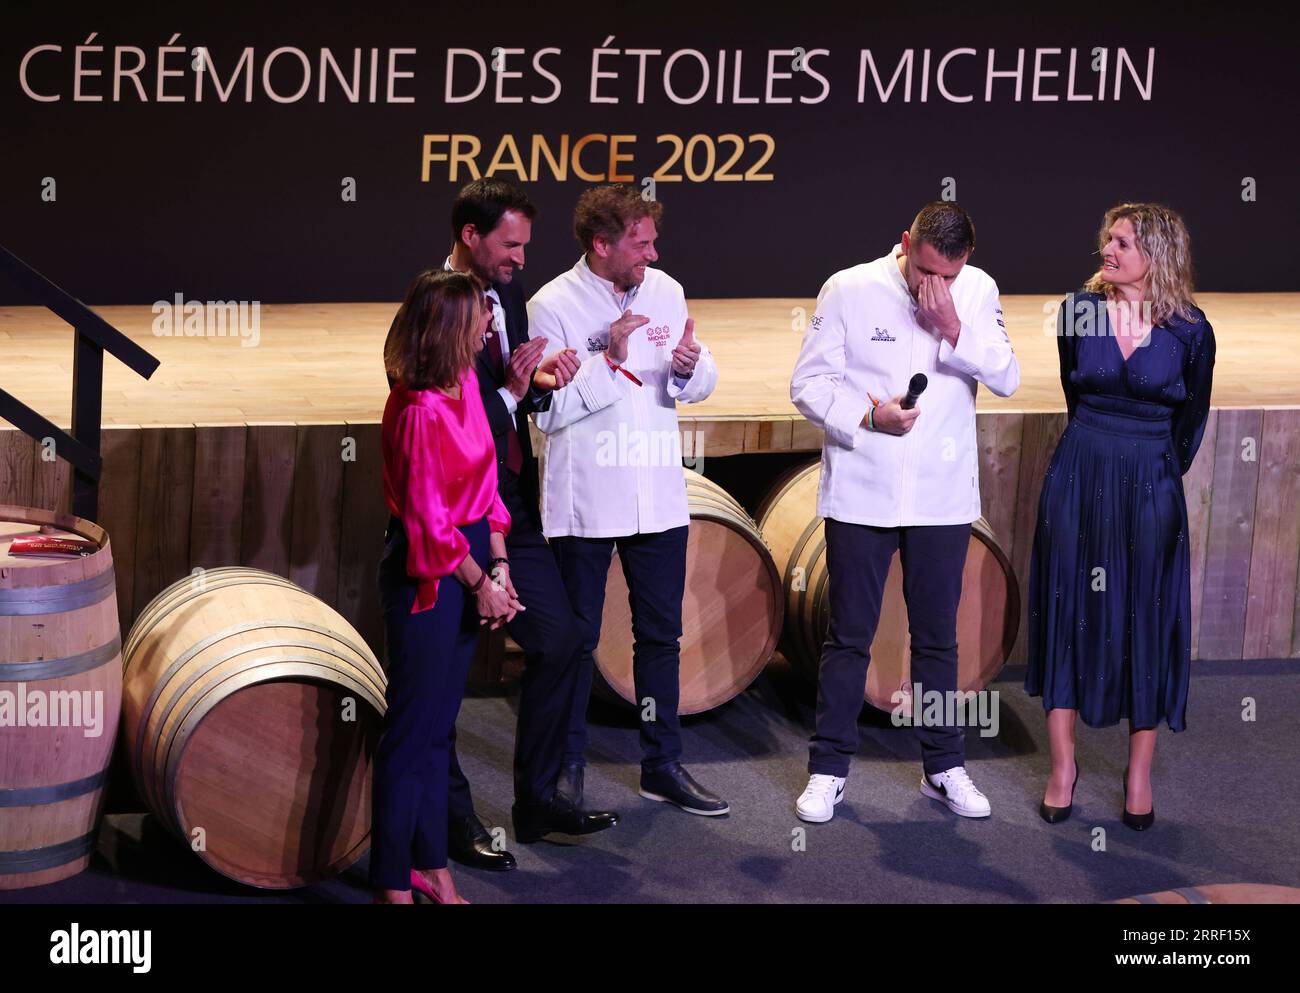 220323 -- COGNAC, 23. März 2022 -- der französische Küchenchef Arnaud Donckele 3. L und der französische Küchenchef Dimitri Droisneau 2. R feiern, nachdem er 2022 bei der Verleihung des Michelin Guide in Cognac, Frankreich, am 22. März 2022 mit einem dritten Michelin-Stern ausgezeichnet wurde. Der Michelin Guide startete seine Ausgabe 2022 am Dienstag in Cognac, das erste Mal seit 122 Jahren, dass die Zeremonie außerhalb von Paris stattfand. Zwei Restaurants wurden mit der höchsten Auszeichnung von drei Sternen ausgezeichnet. FRANKREICH-COGNAC-MICHELIN-PREISVERLEIHUNG GAOXJING PUBLICATIONXNOTXINXCHN Stockfoto